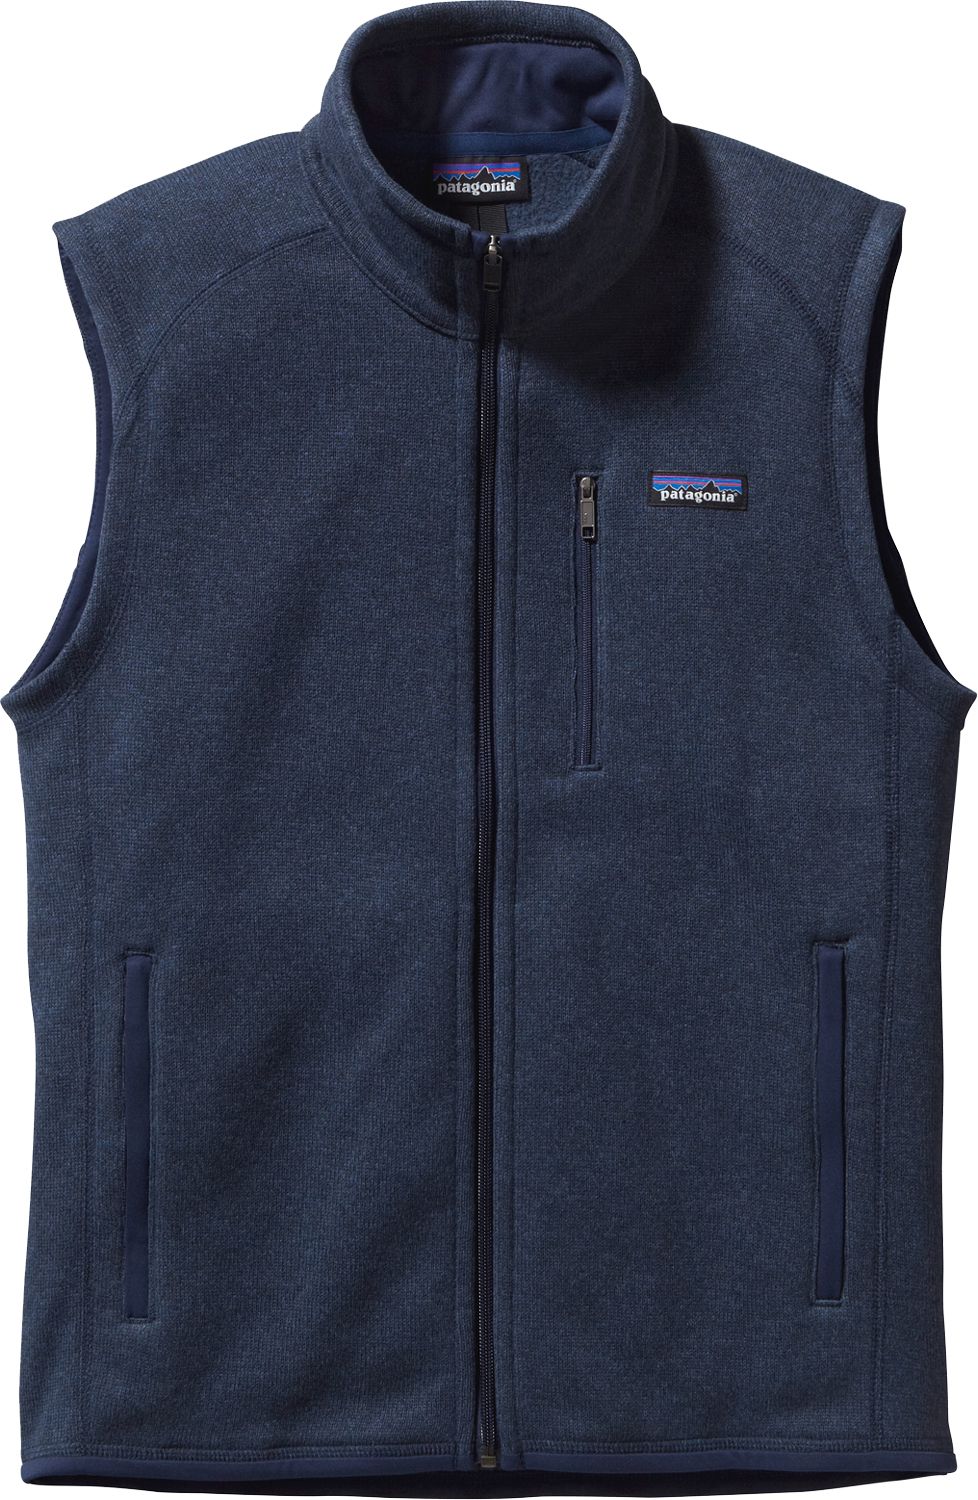 Men's Fleece Jackets & Sweaters | DICK'S Sporting Goods